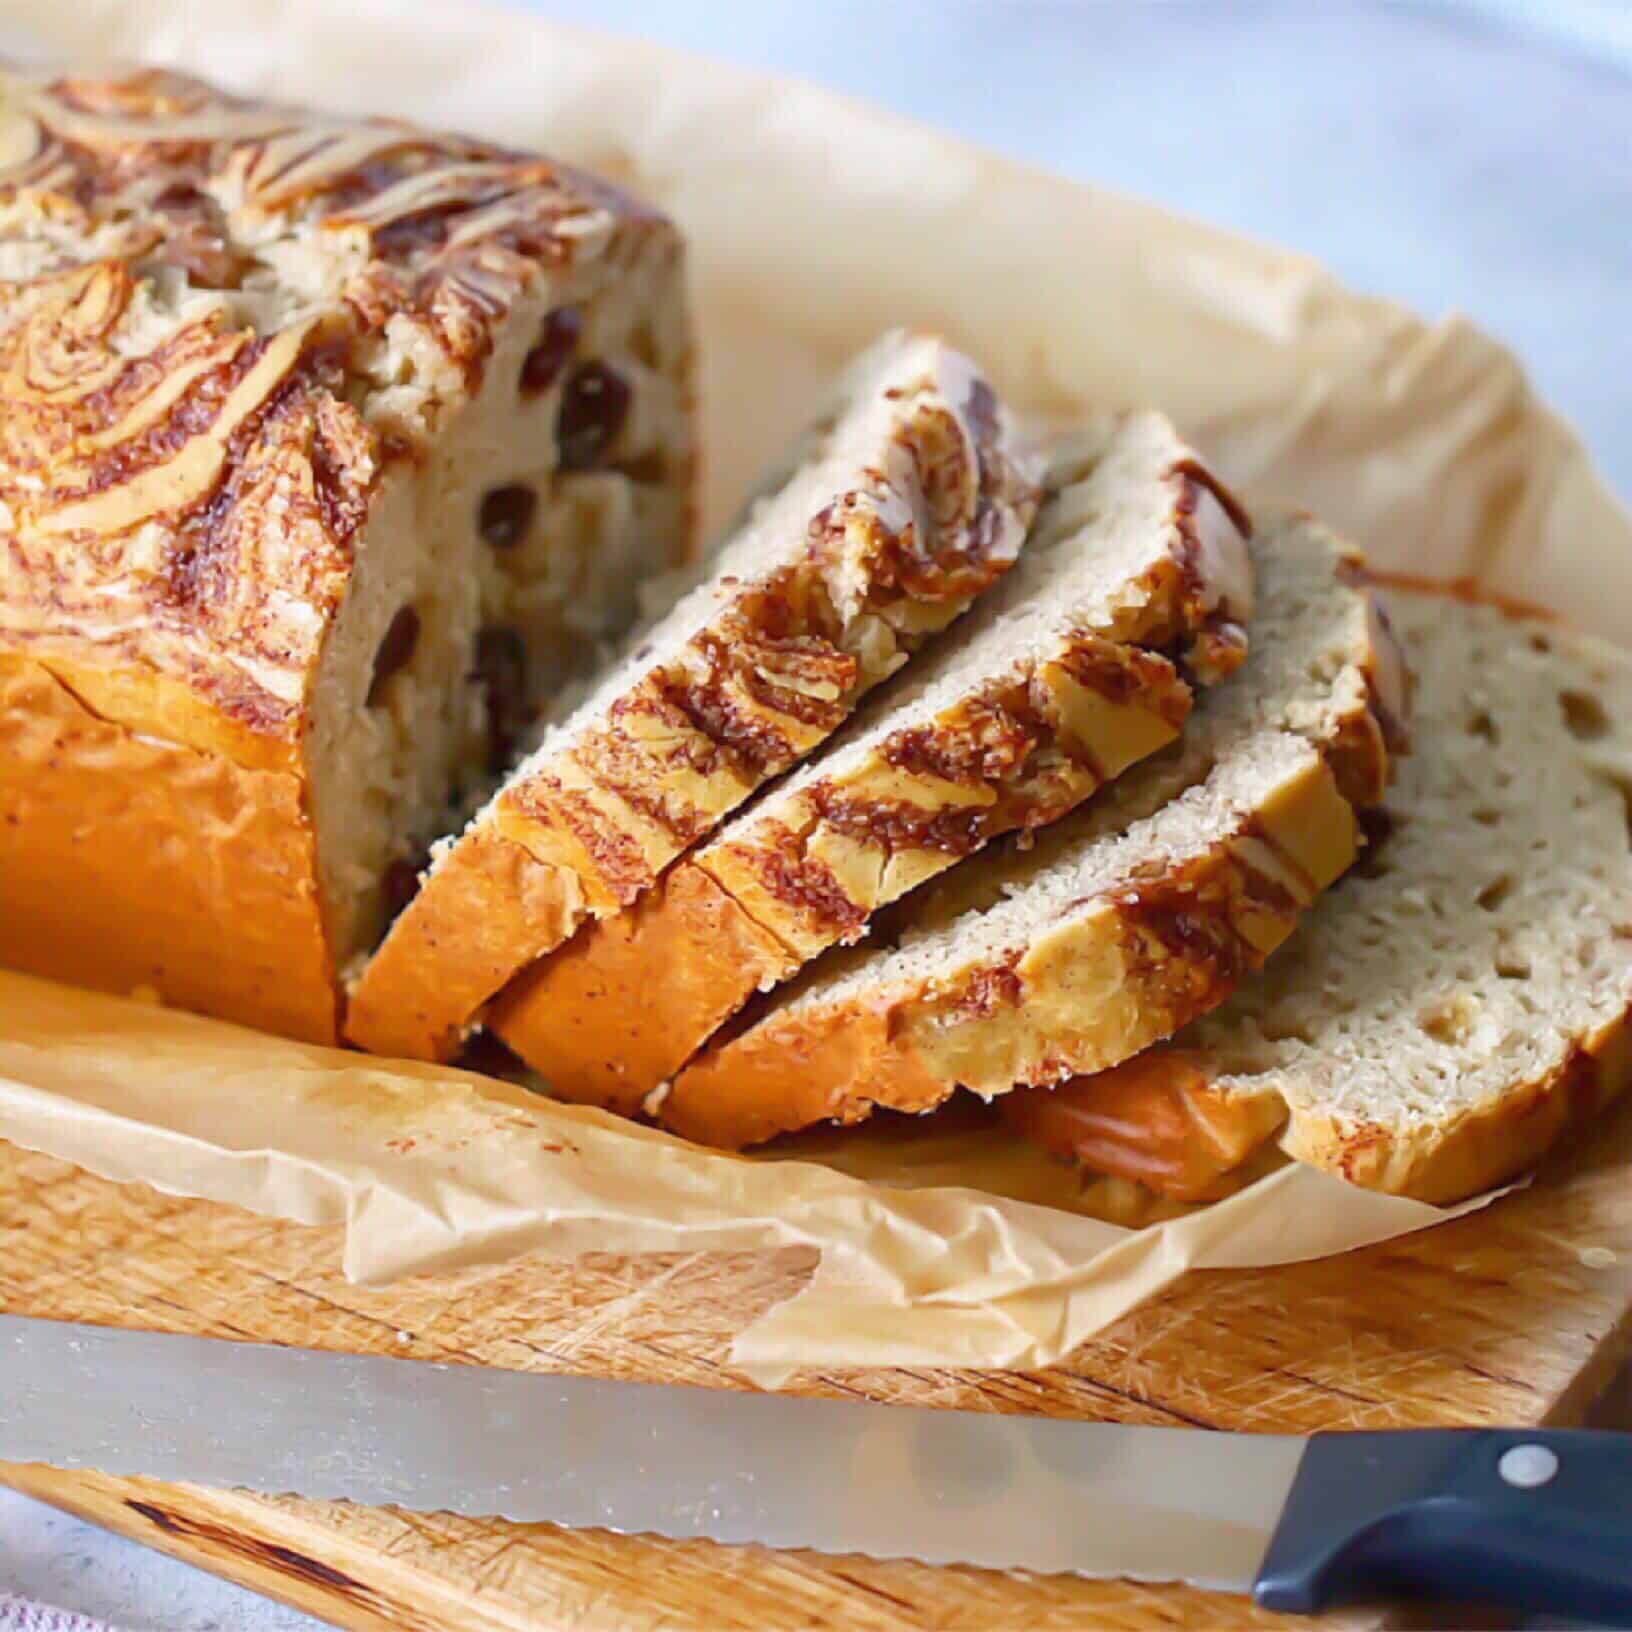 Paleo Cinnamon Raisin Bread